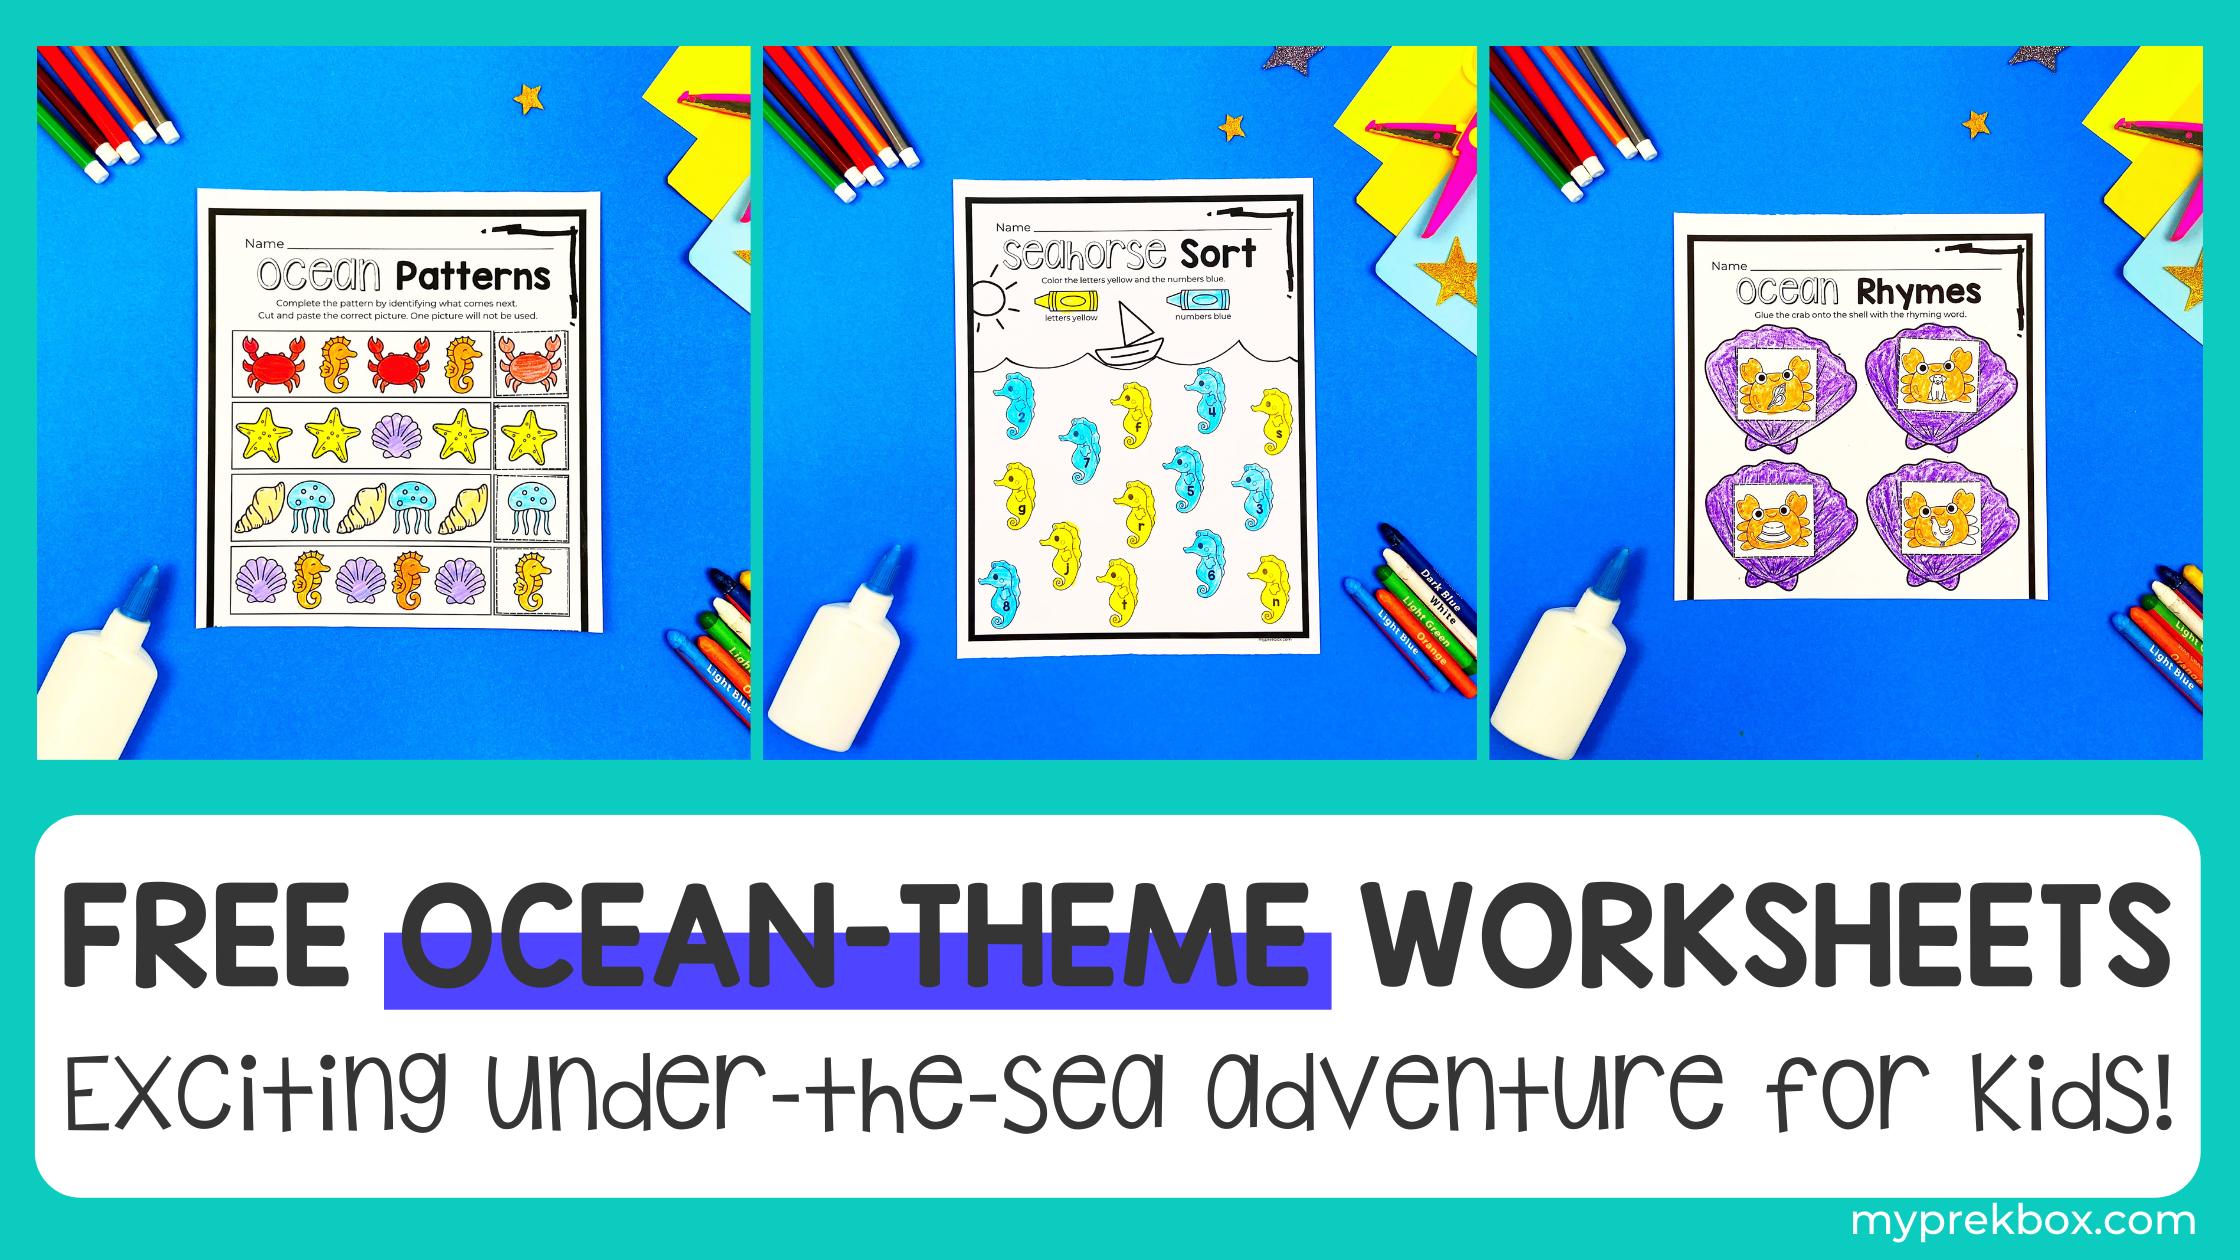 Ocean Preschool Fun Pack: Free Ocean-theme Worksheets for Preschoolers